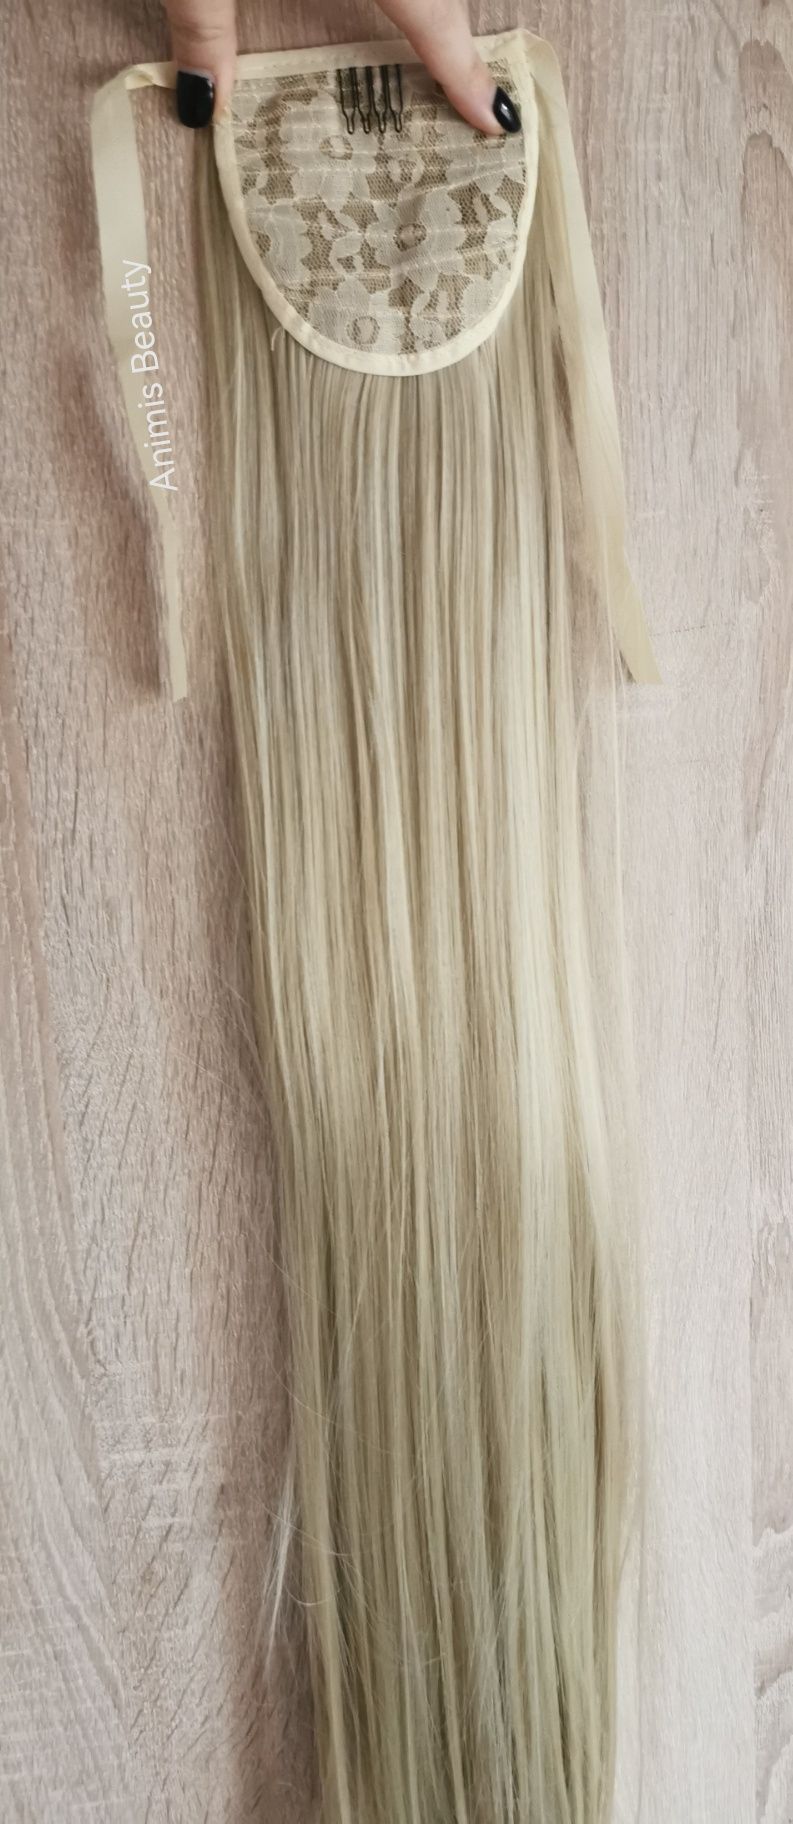 coada de par ponytail BLOND Cenusiu 60 cm imită par natural